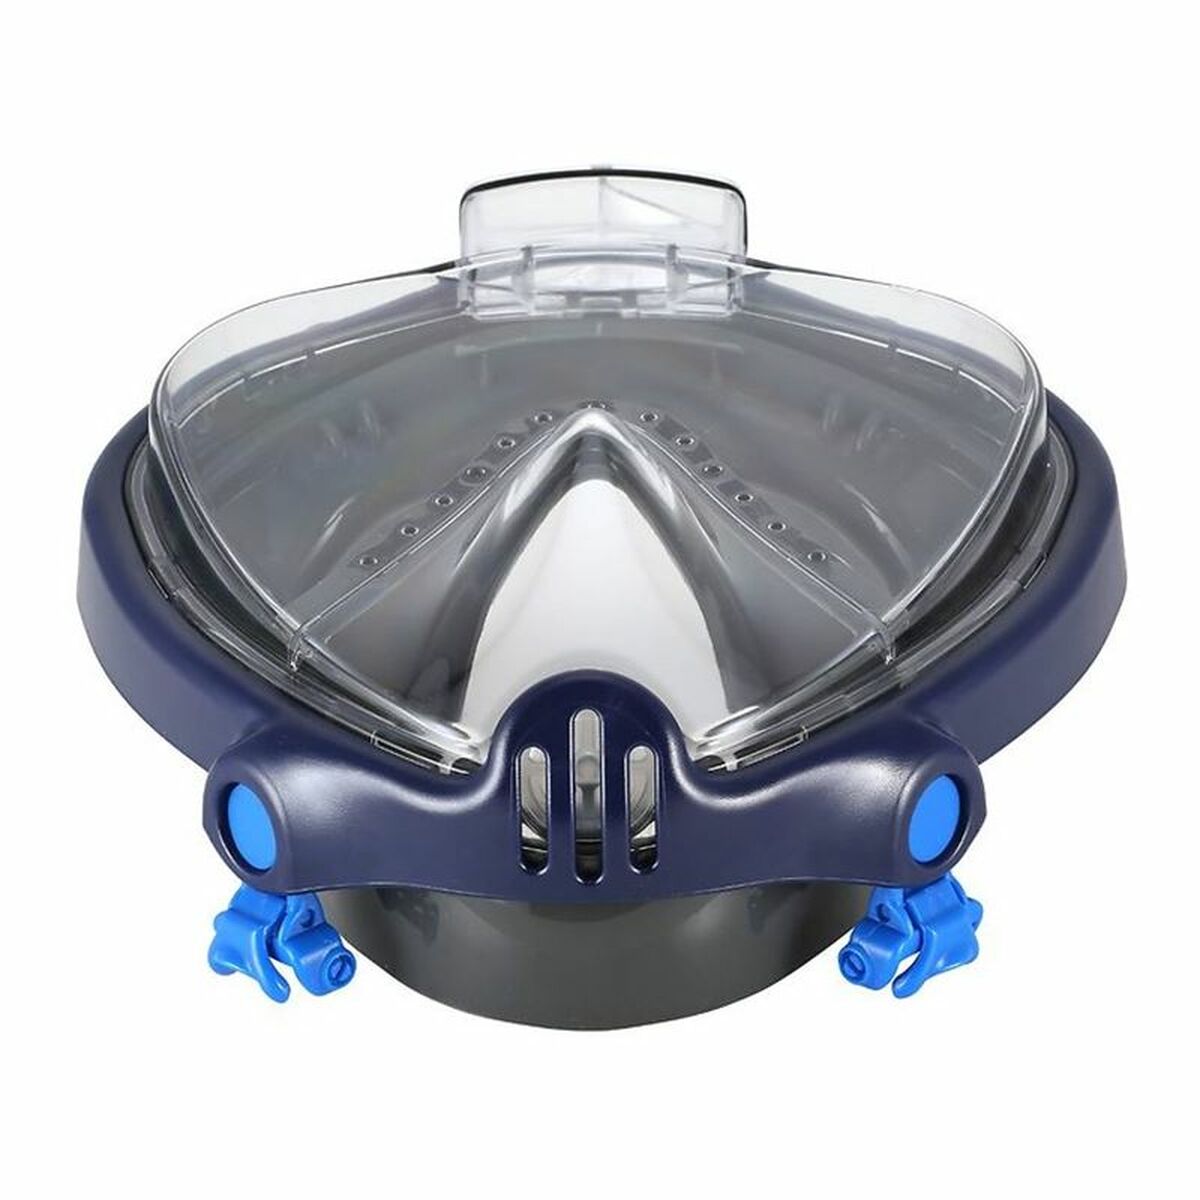 Diving mask Aqua Lung Sport Smart Black